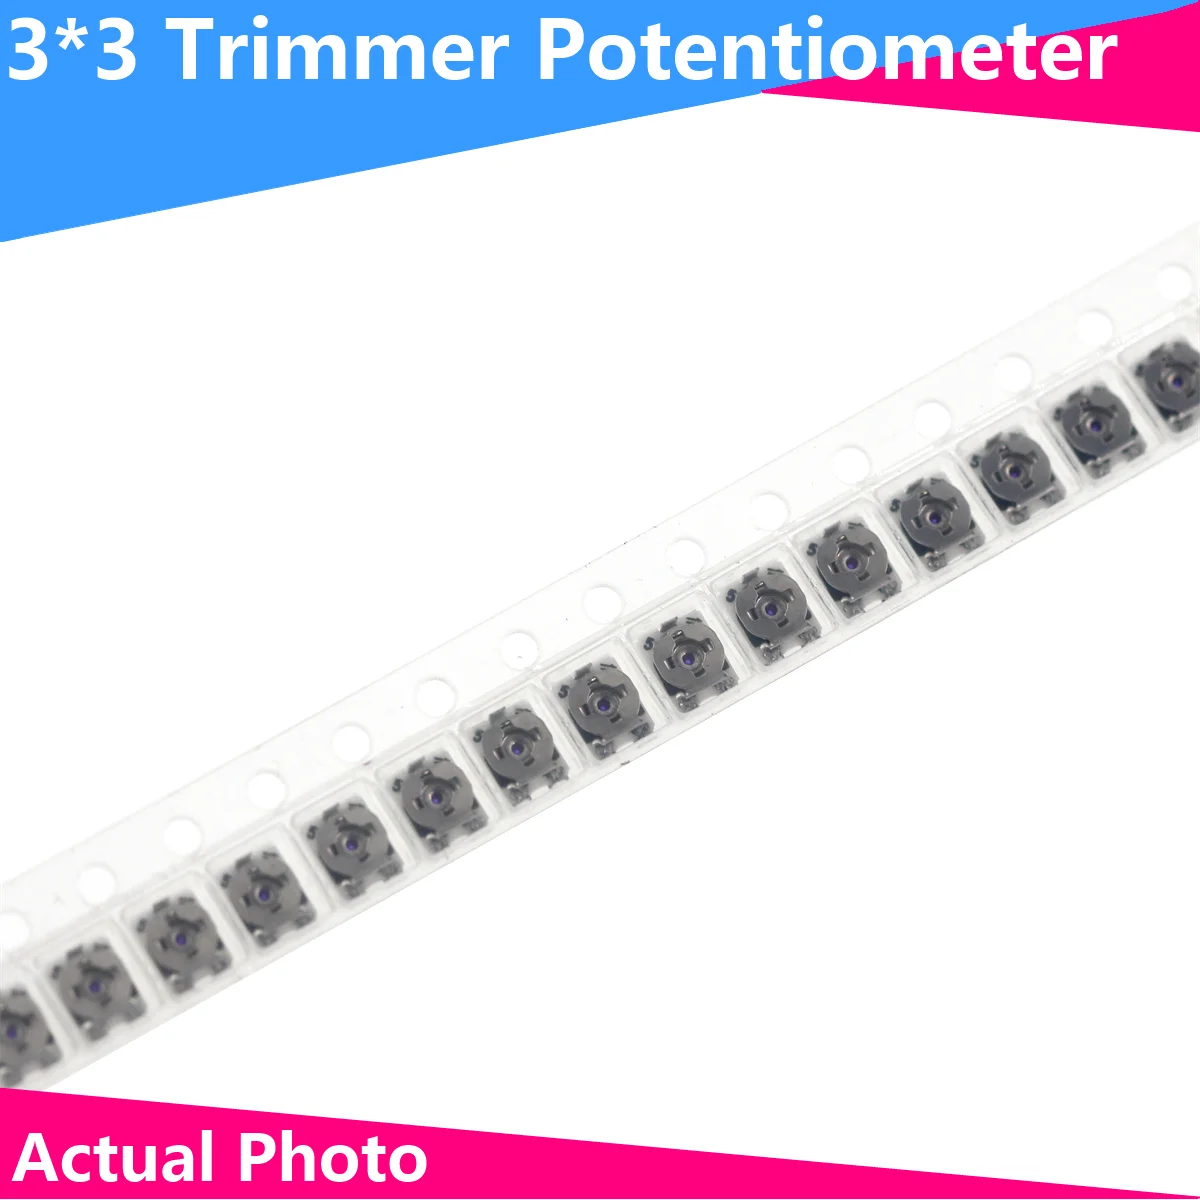 20шт 3*3 Потенциометр сопротивления Триммера Trimpot SMD 3X3 Регулируемый Переменный резистор 100 500 1K 2K 5K 10K 20K 50K 100K 1 М ом